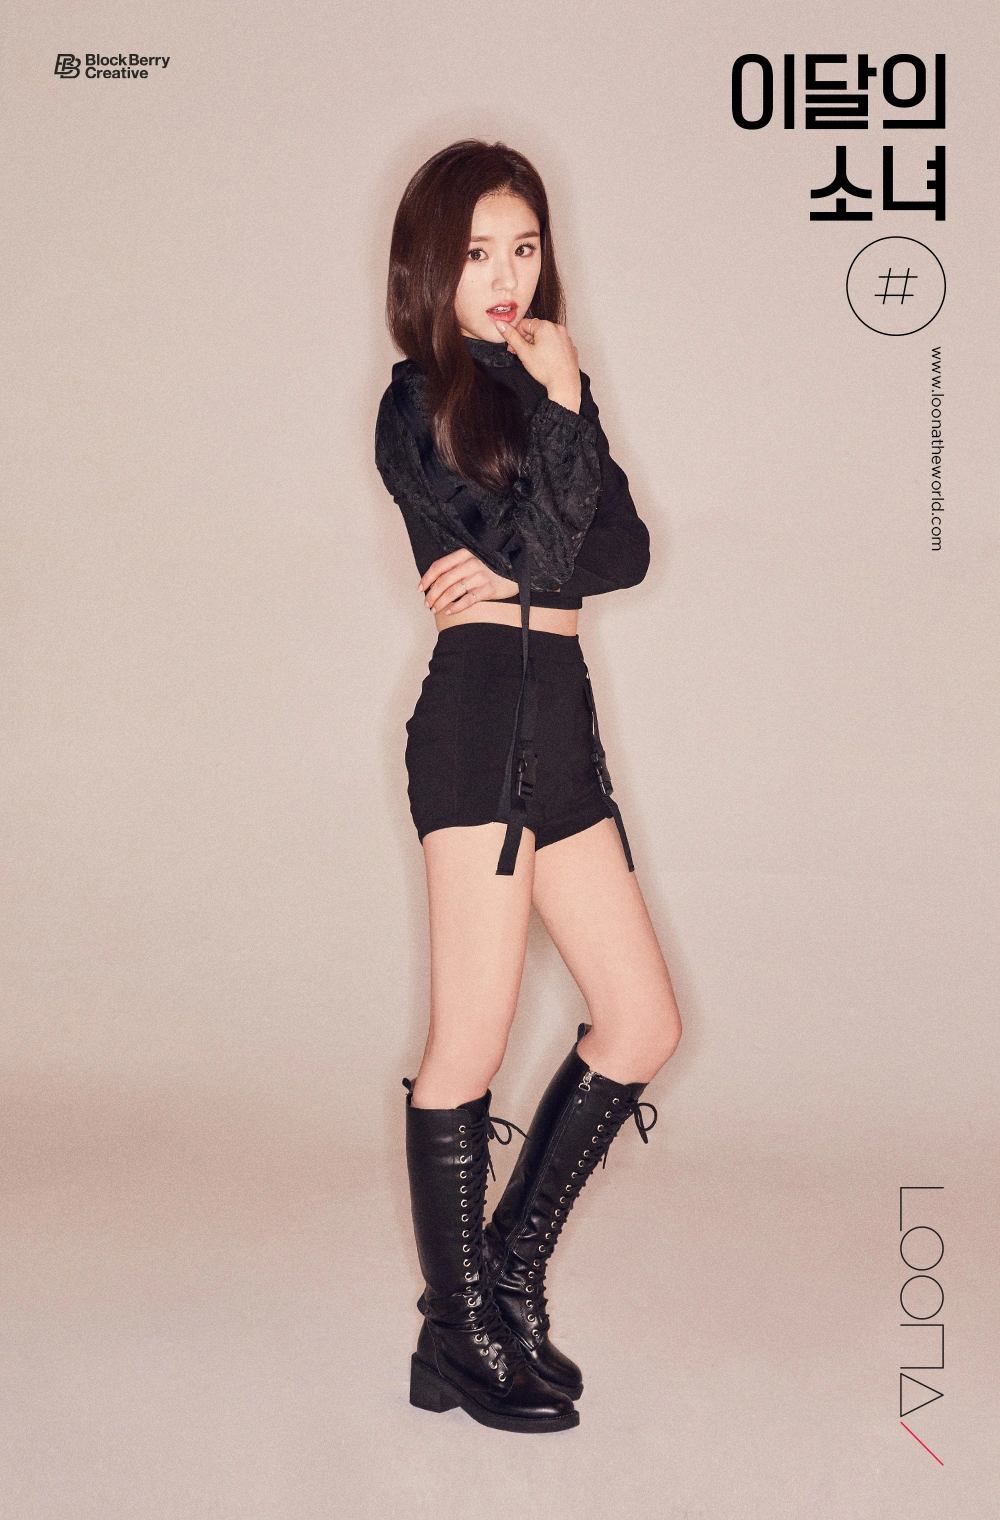 Loona # Hash Heejin Concept Teaser Picture Image Photo Kpop K-Concept 2